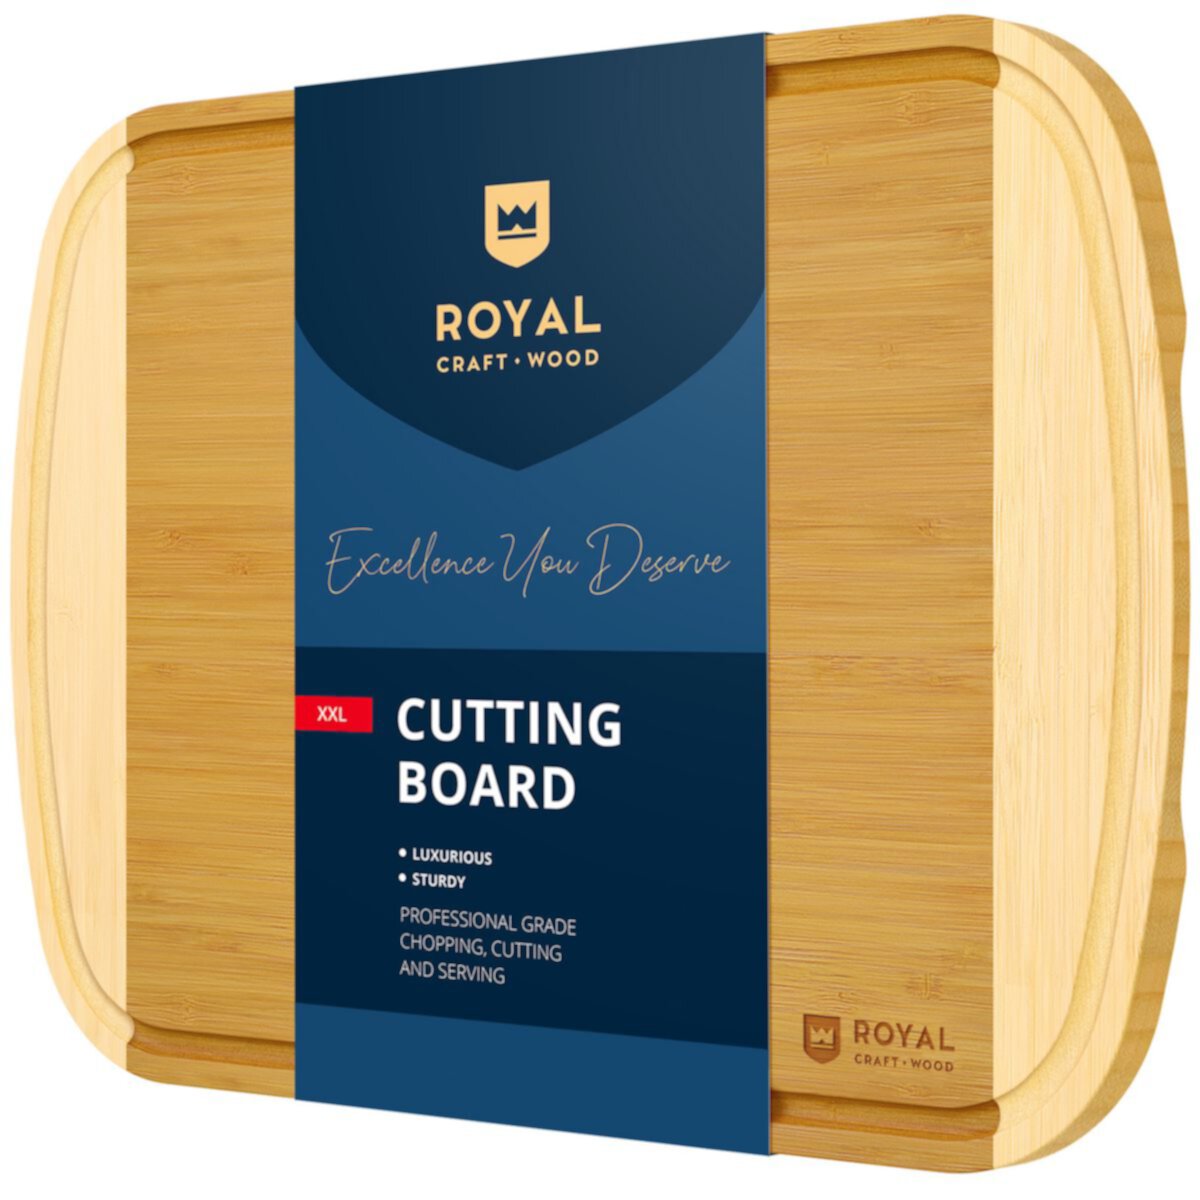 Cutting Board Two-tone Xxl, 20”x14” Royal Craft Wood